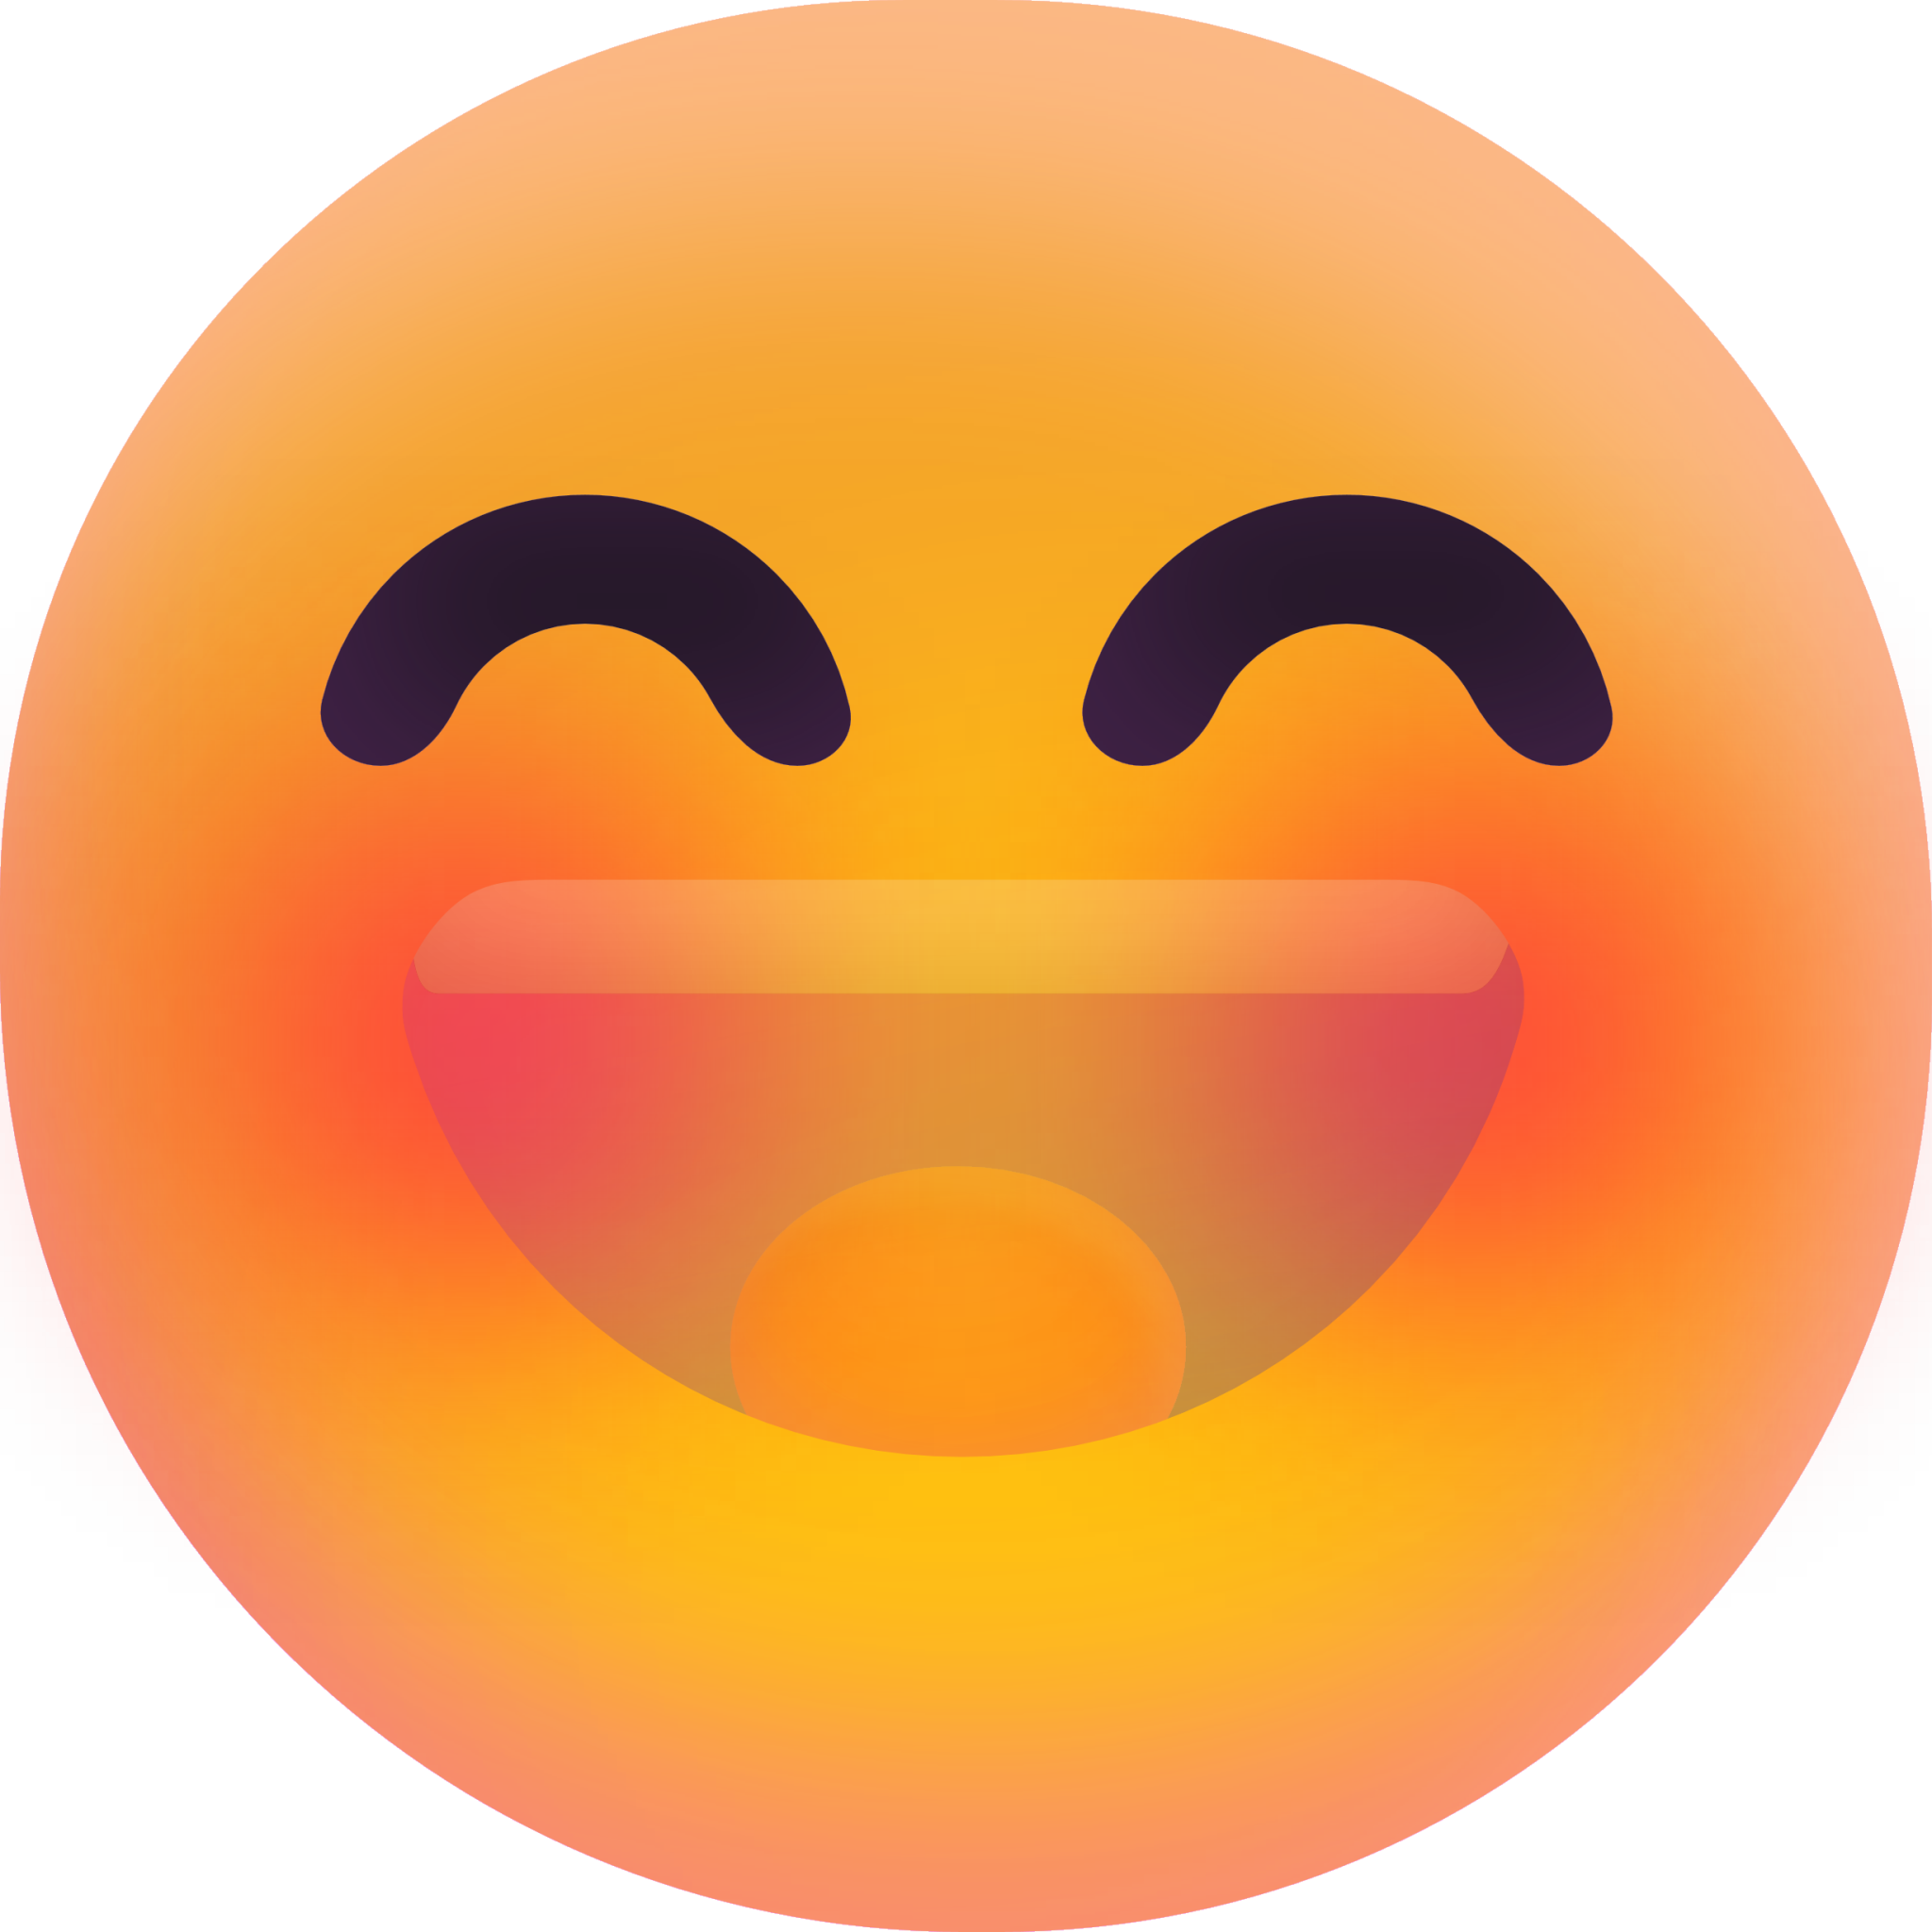 Smiling Face with Smiling Eyes 1 emoji